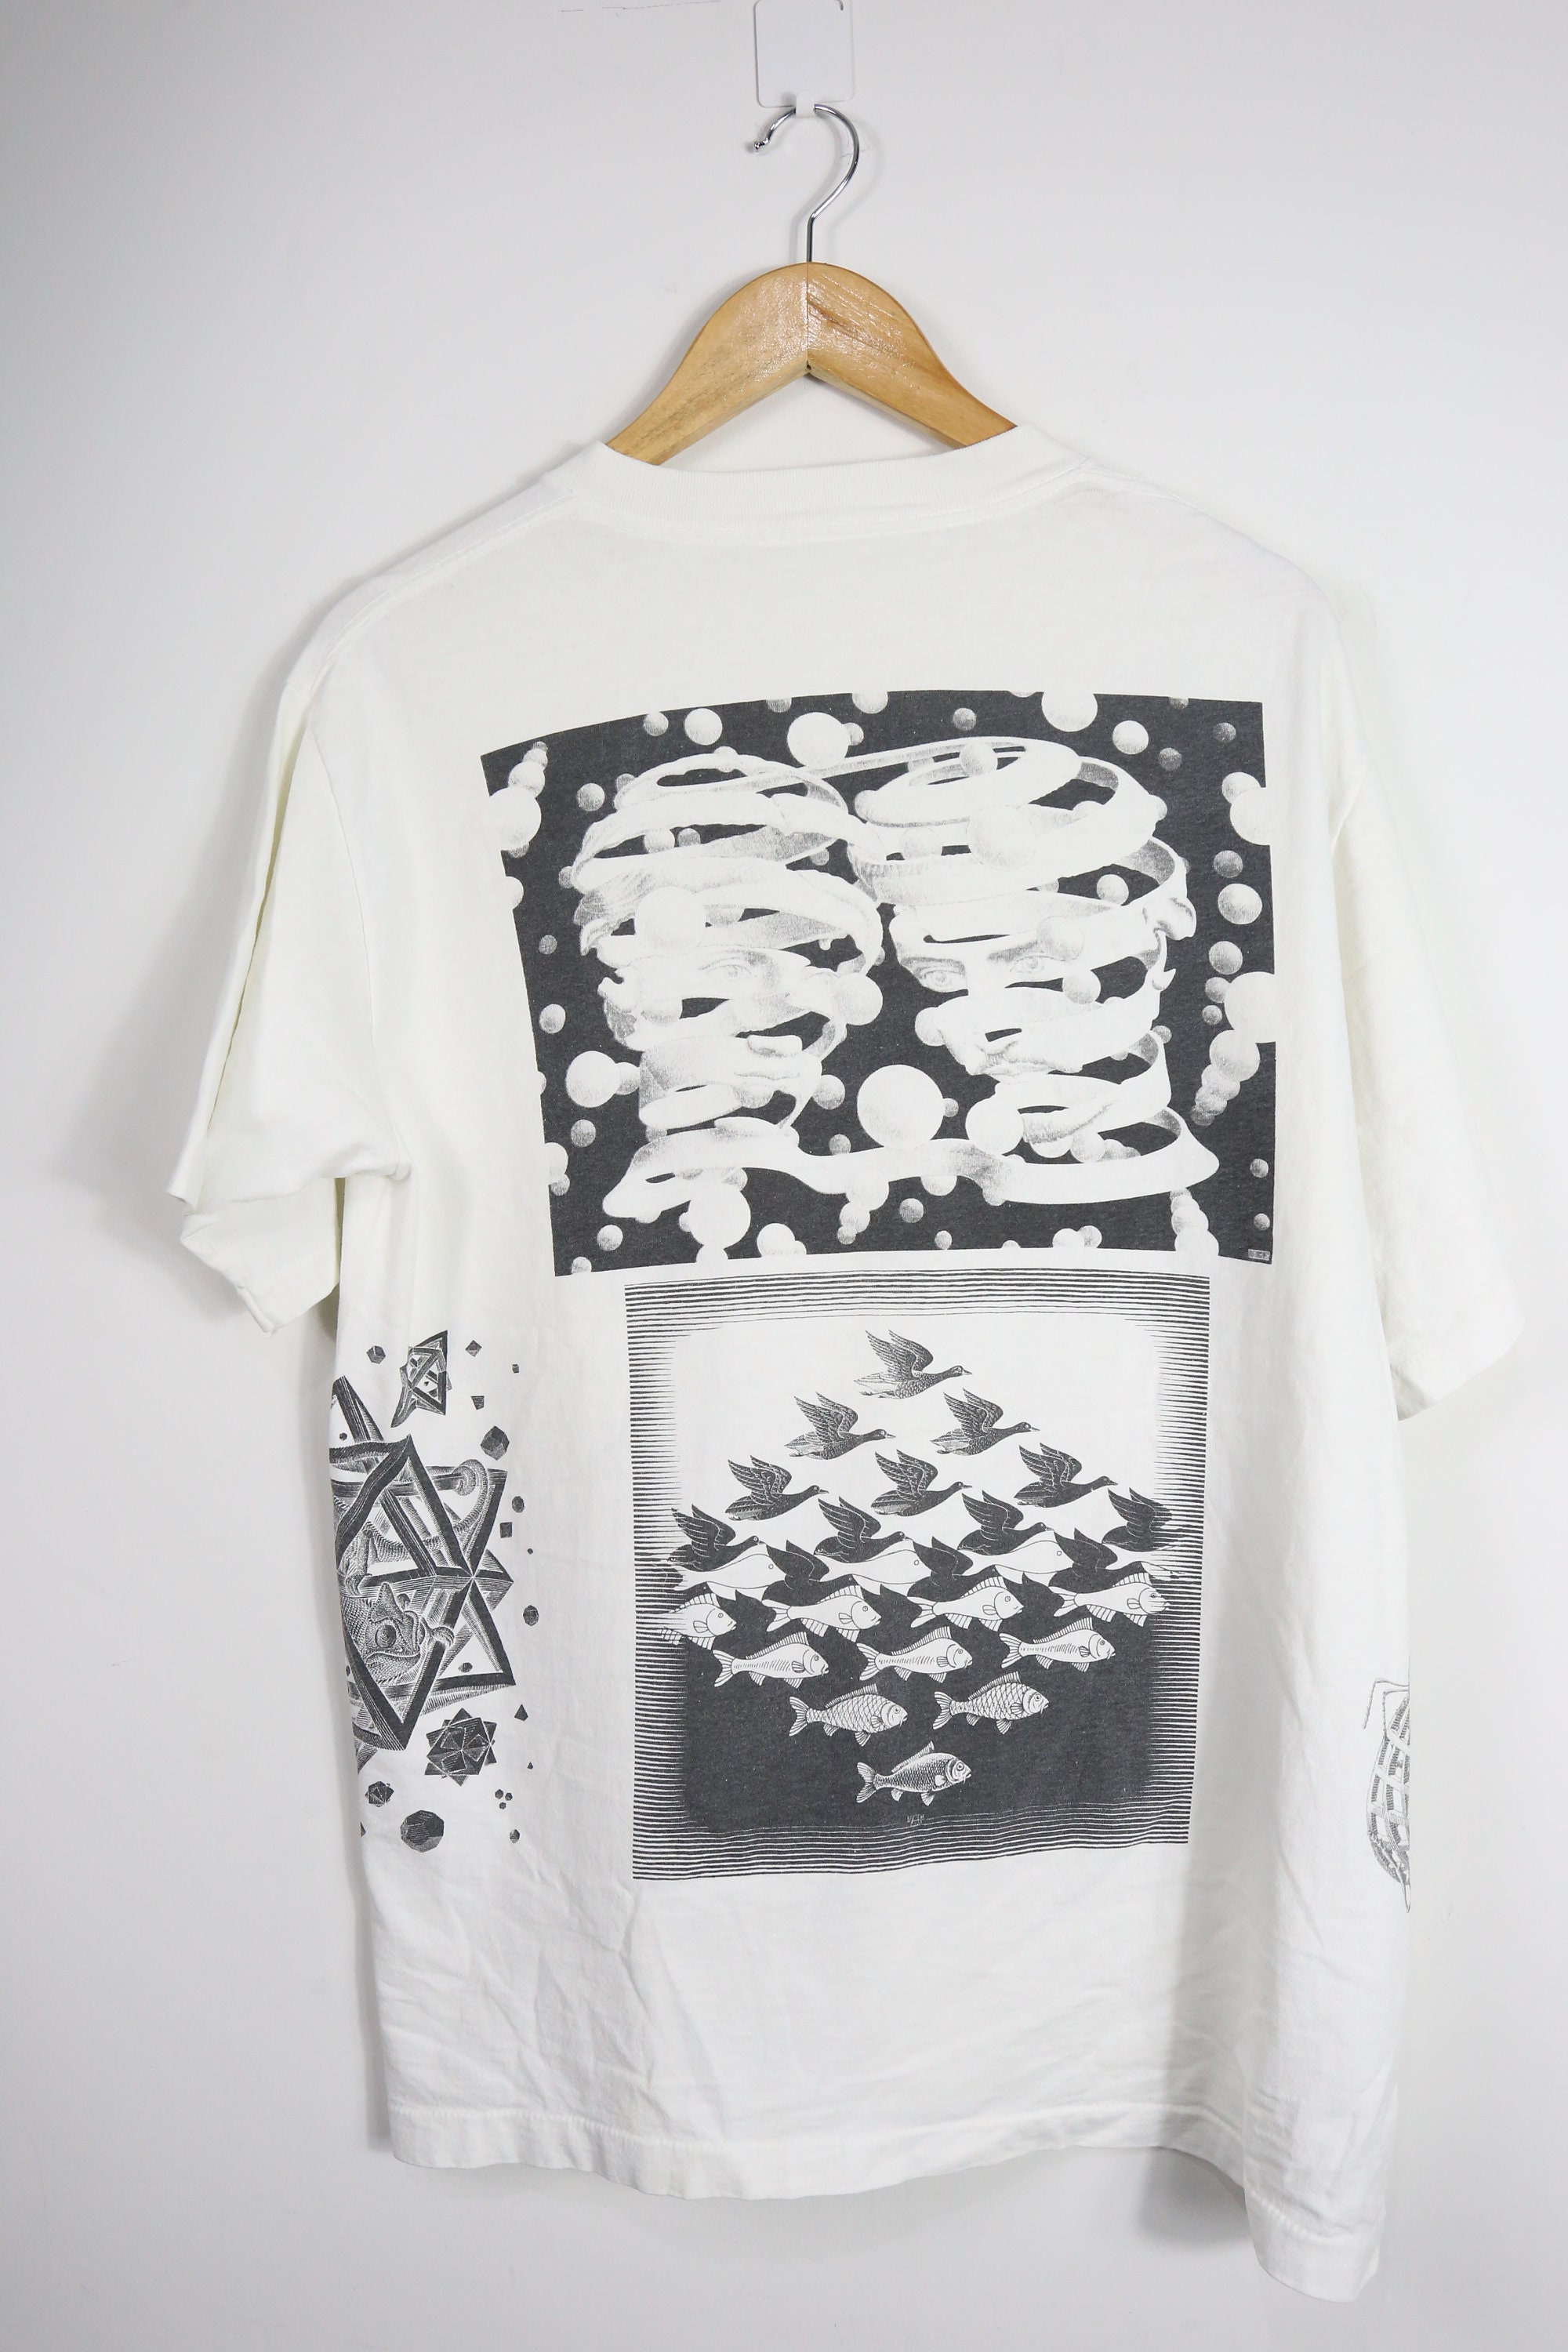 Vintage Art Tees MC Escher Full Print on White T shirt | Etsy